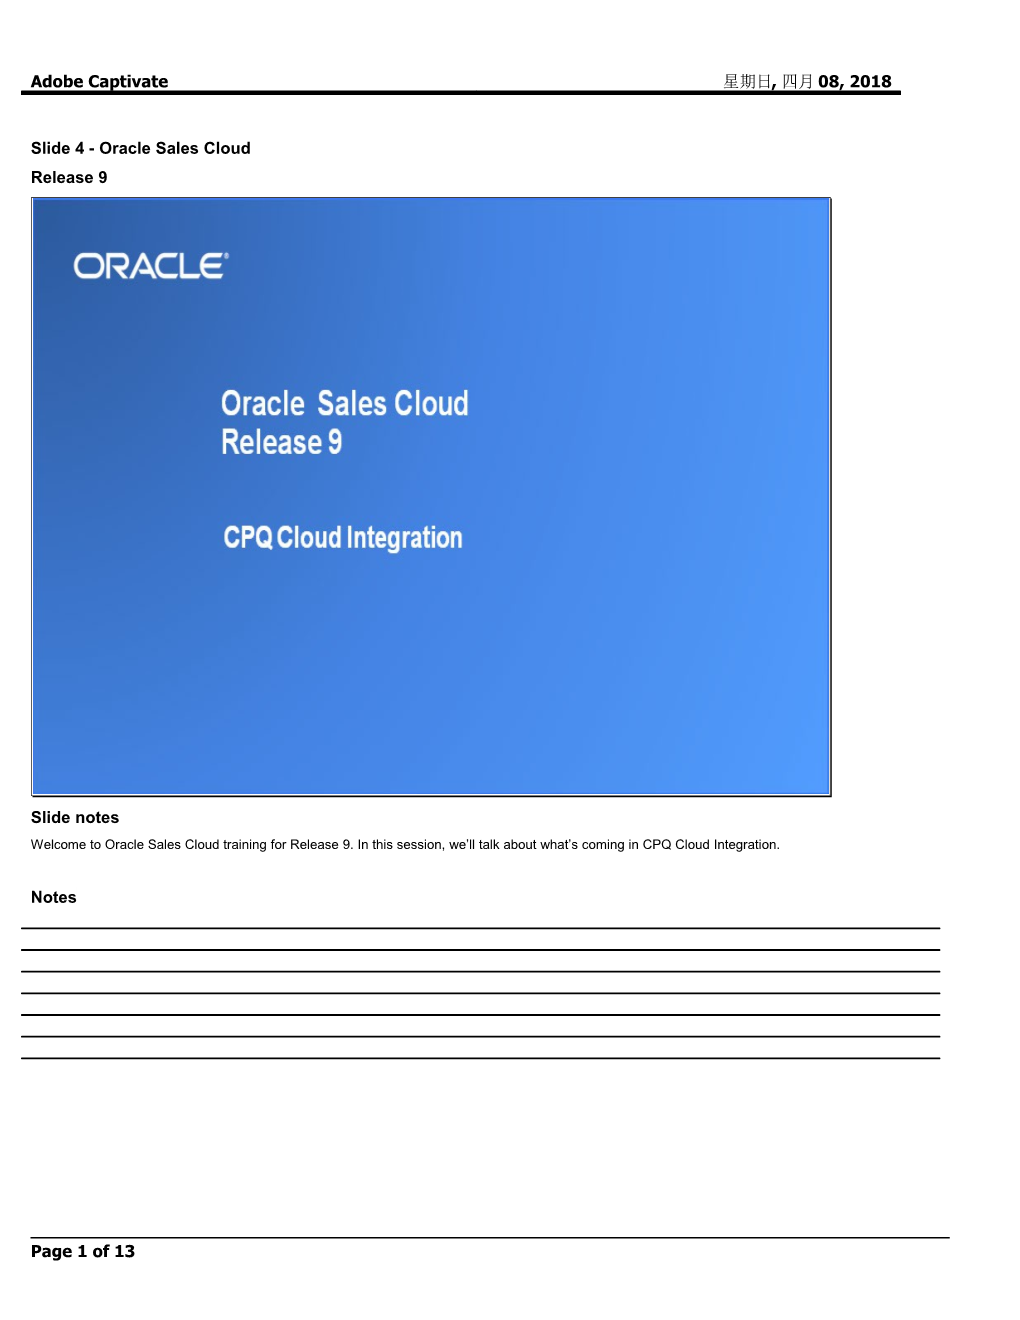 Slide 4 - Oracle Sales Cloud